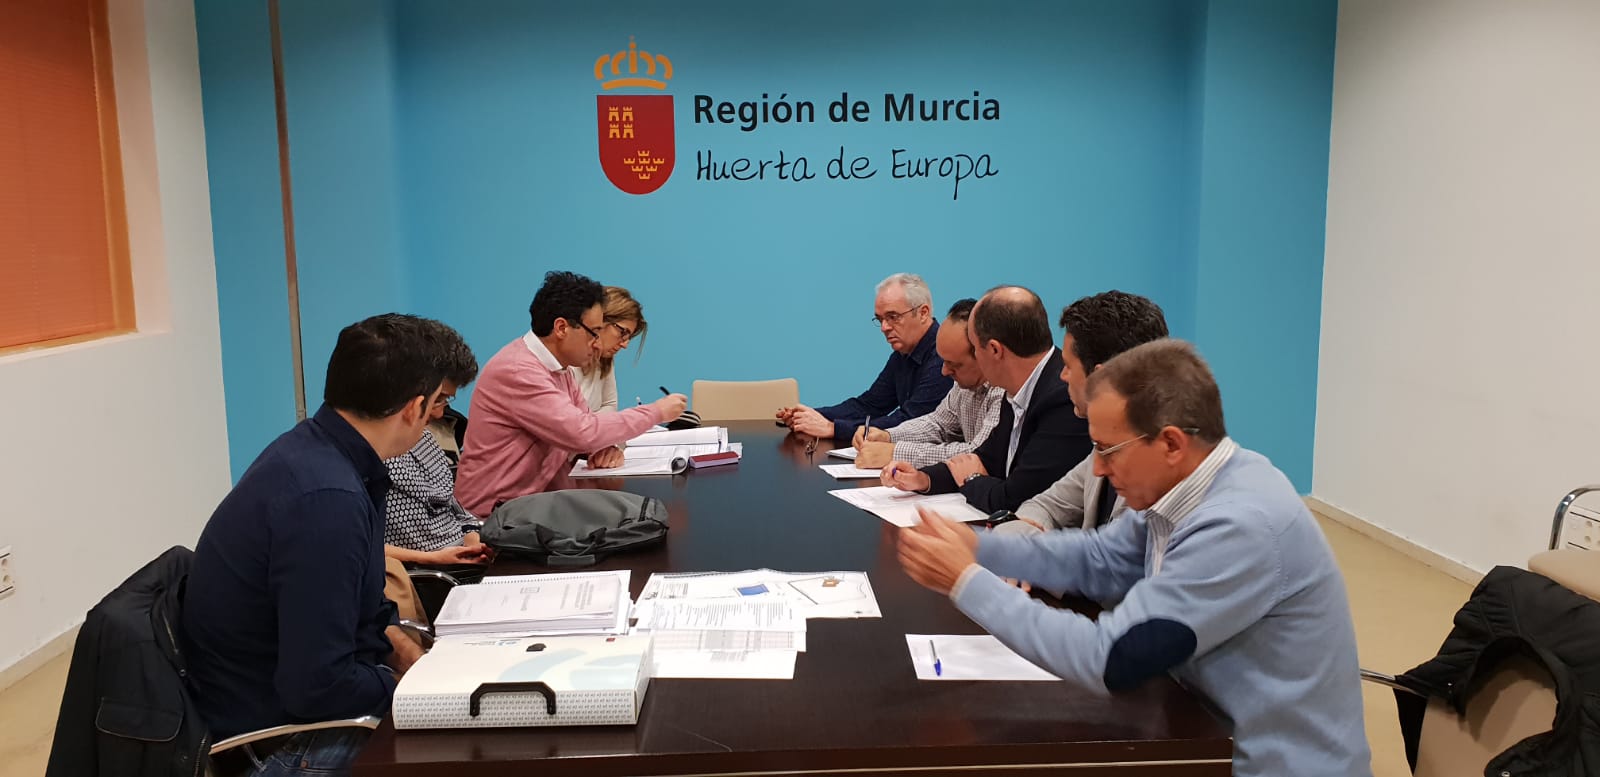 El director general de Innovación, Producciones y Mercados Agroalimentarios, Fulgencio Pérez, informó a los miembros de la delegación sobre las características del sector vitivinícola regional